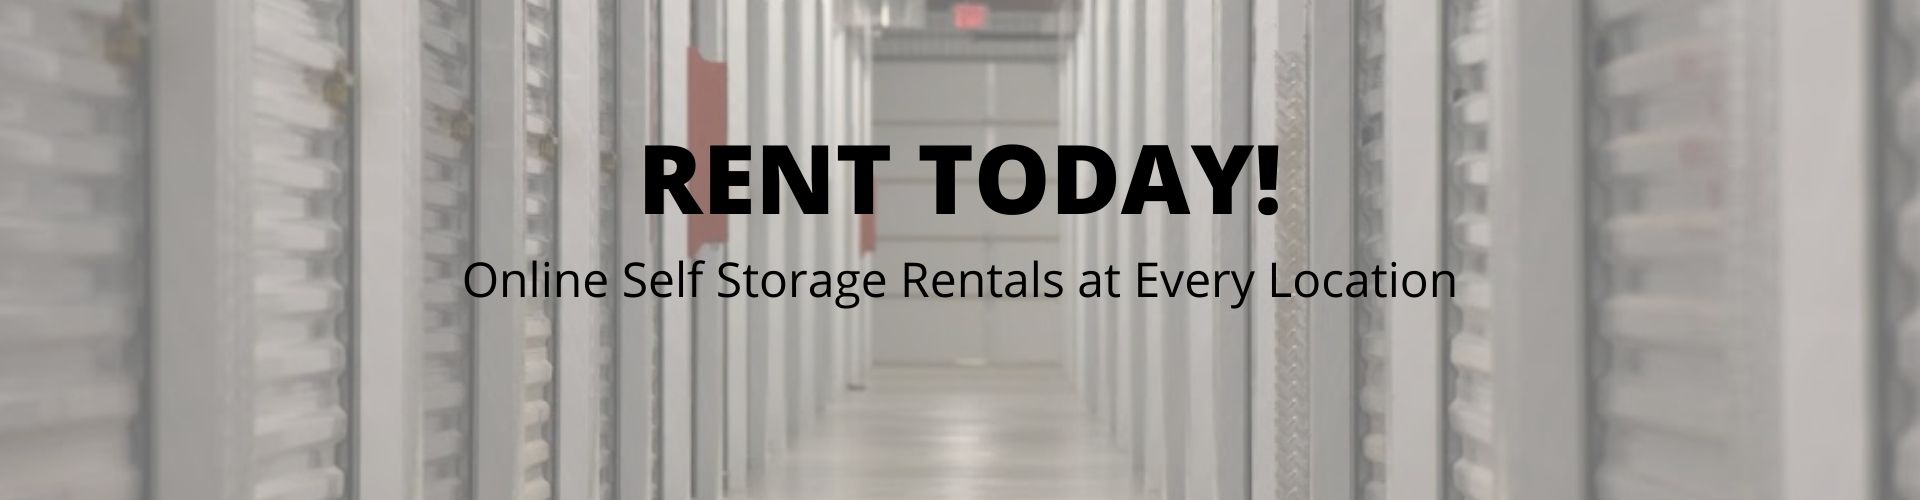 online storage rentals at Calverton Self Storage